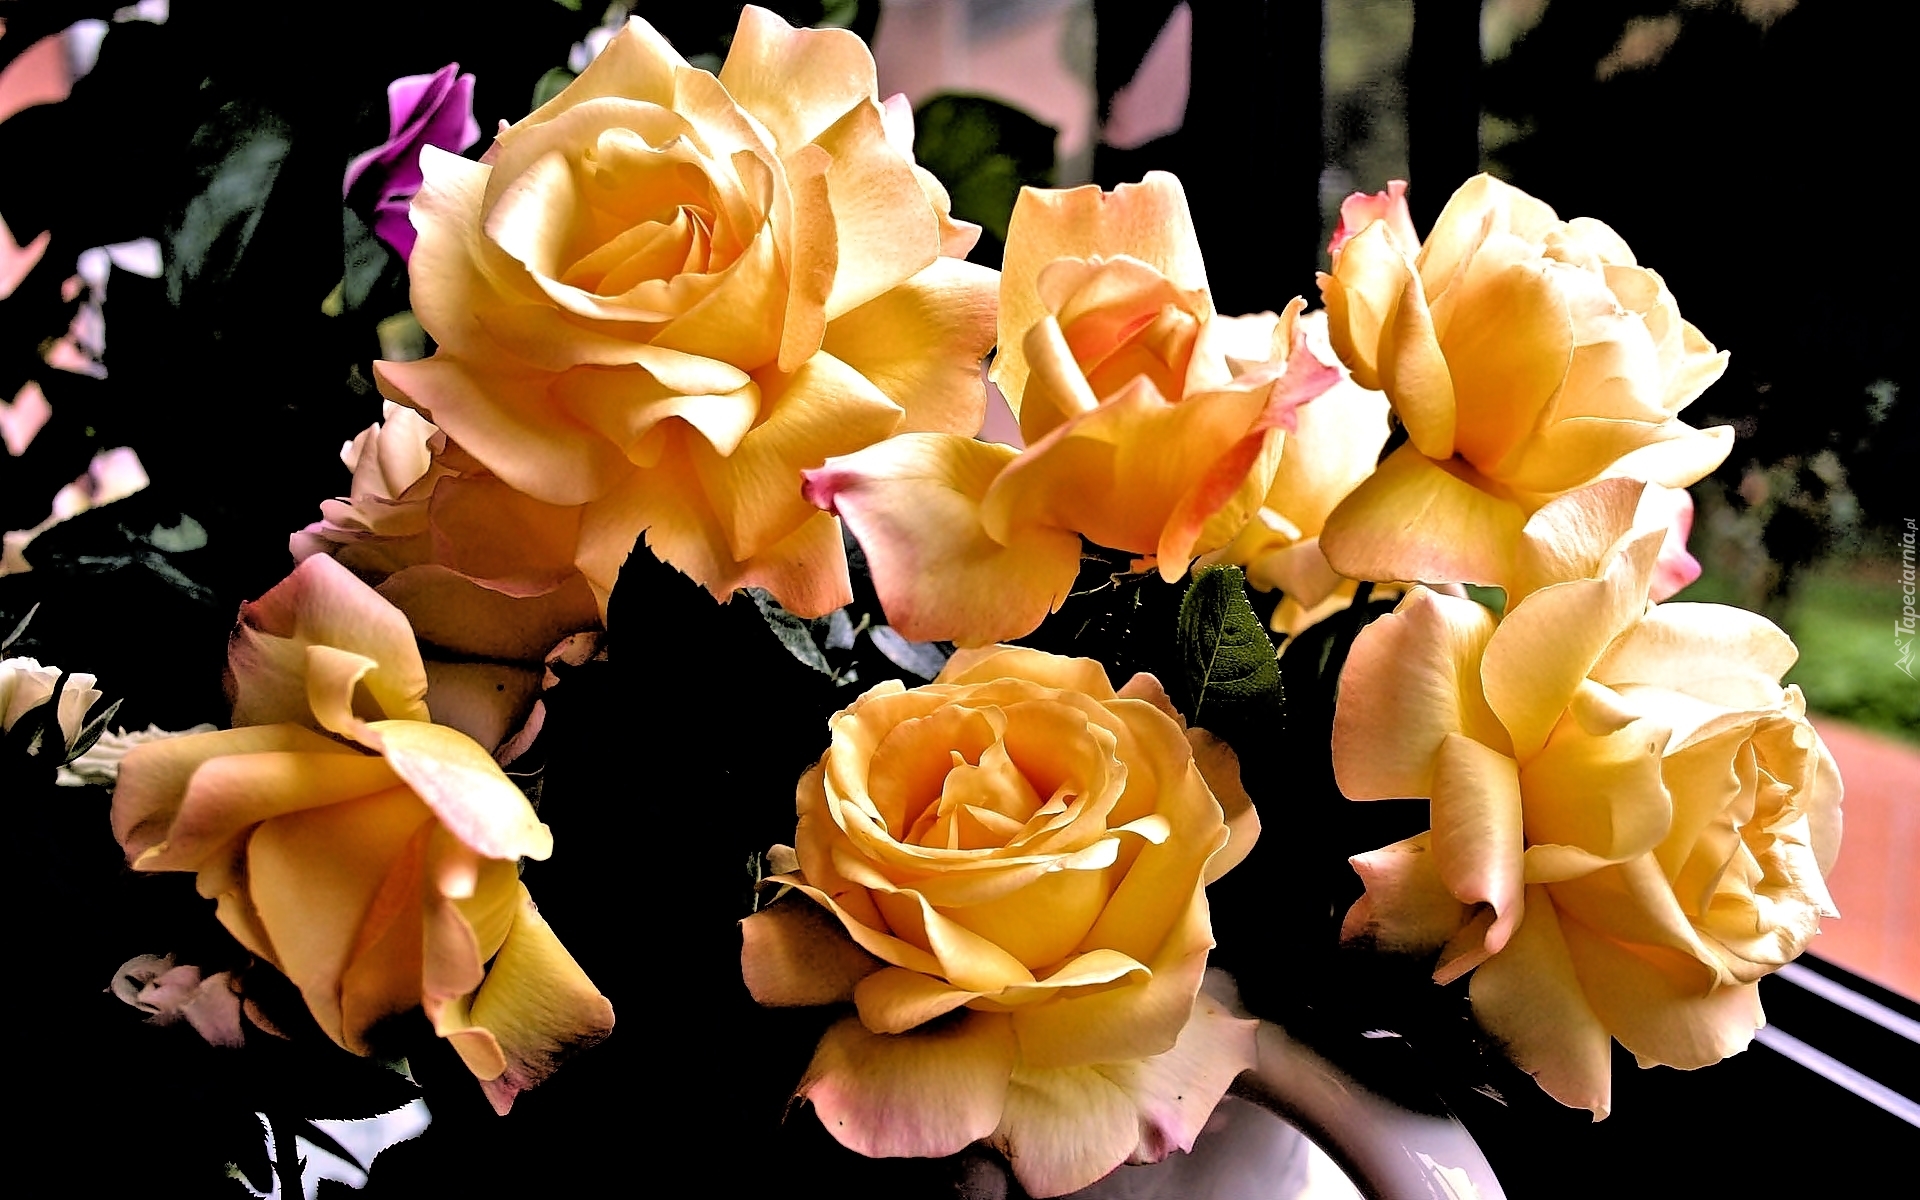 Bukiet, Żółtych, Róż